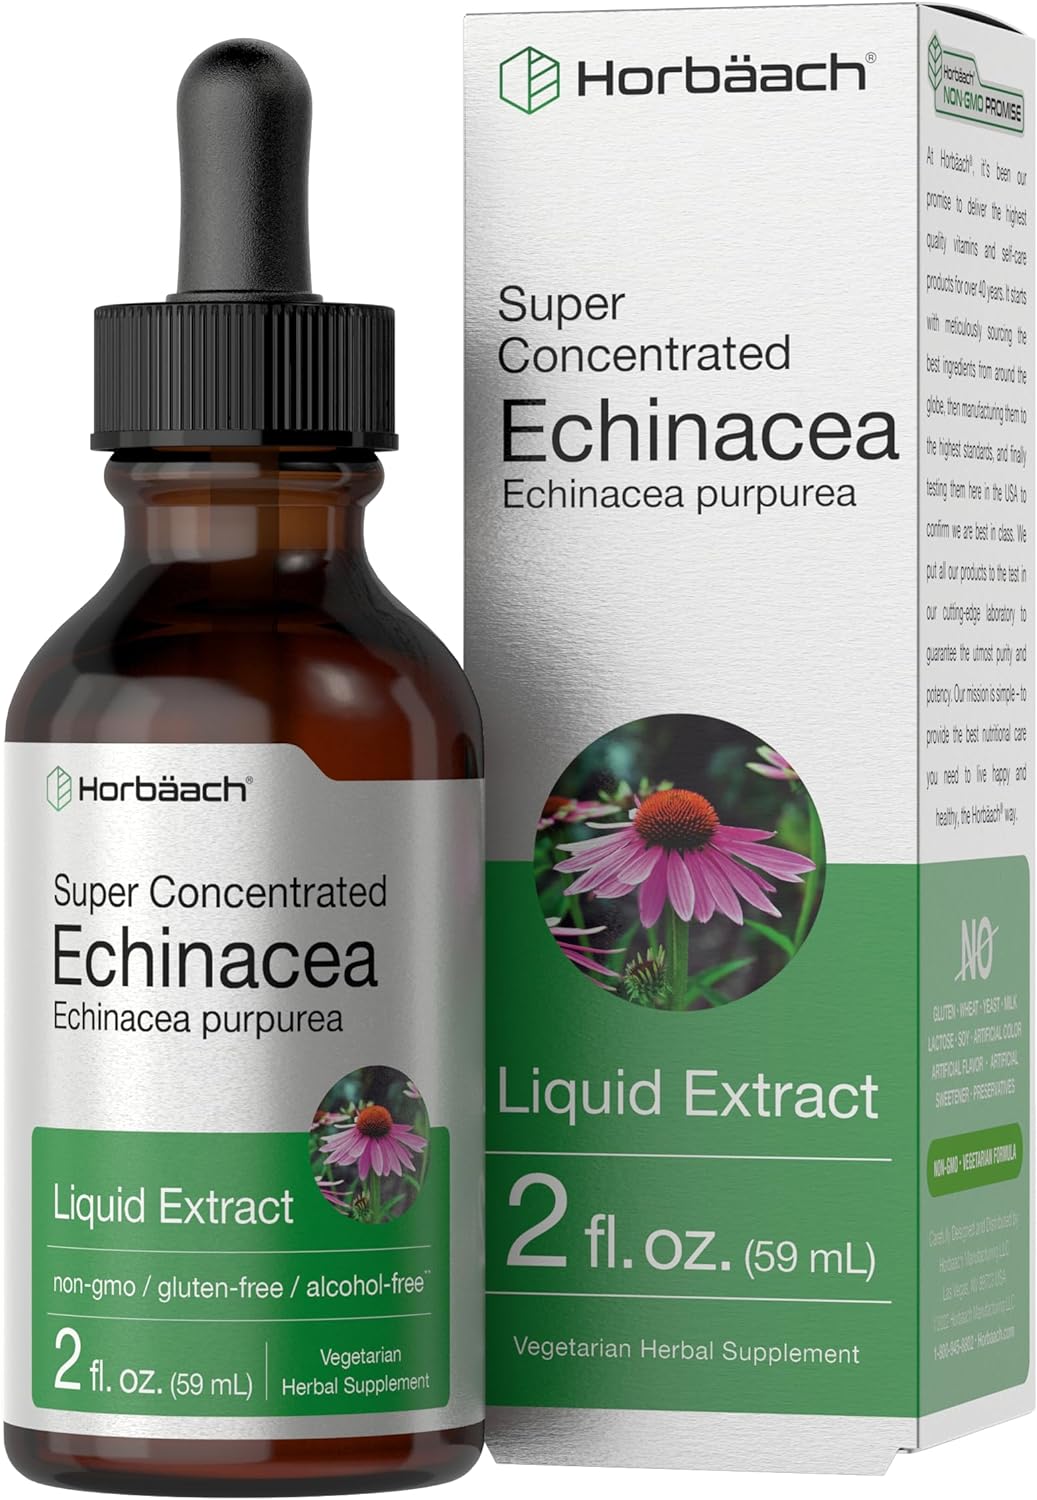 Horbach Echinacea Drops Liquid Extract | 2 fl oz | Super Concentrated Tincture | Alcohol Free, Vegetarian, Non-GMO, and Gluten Free